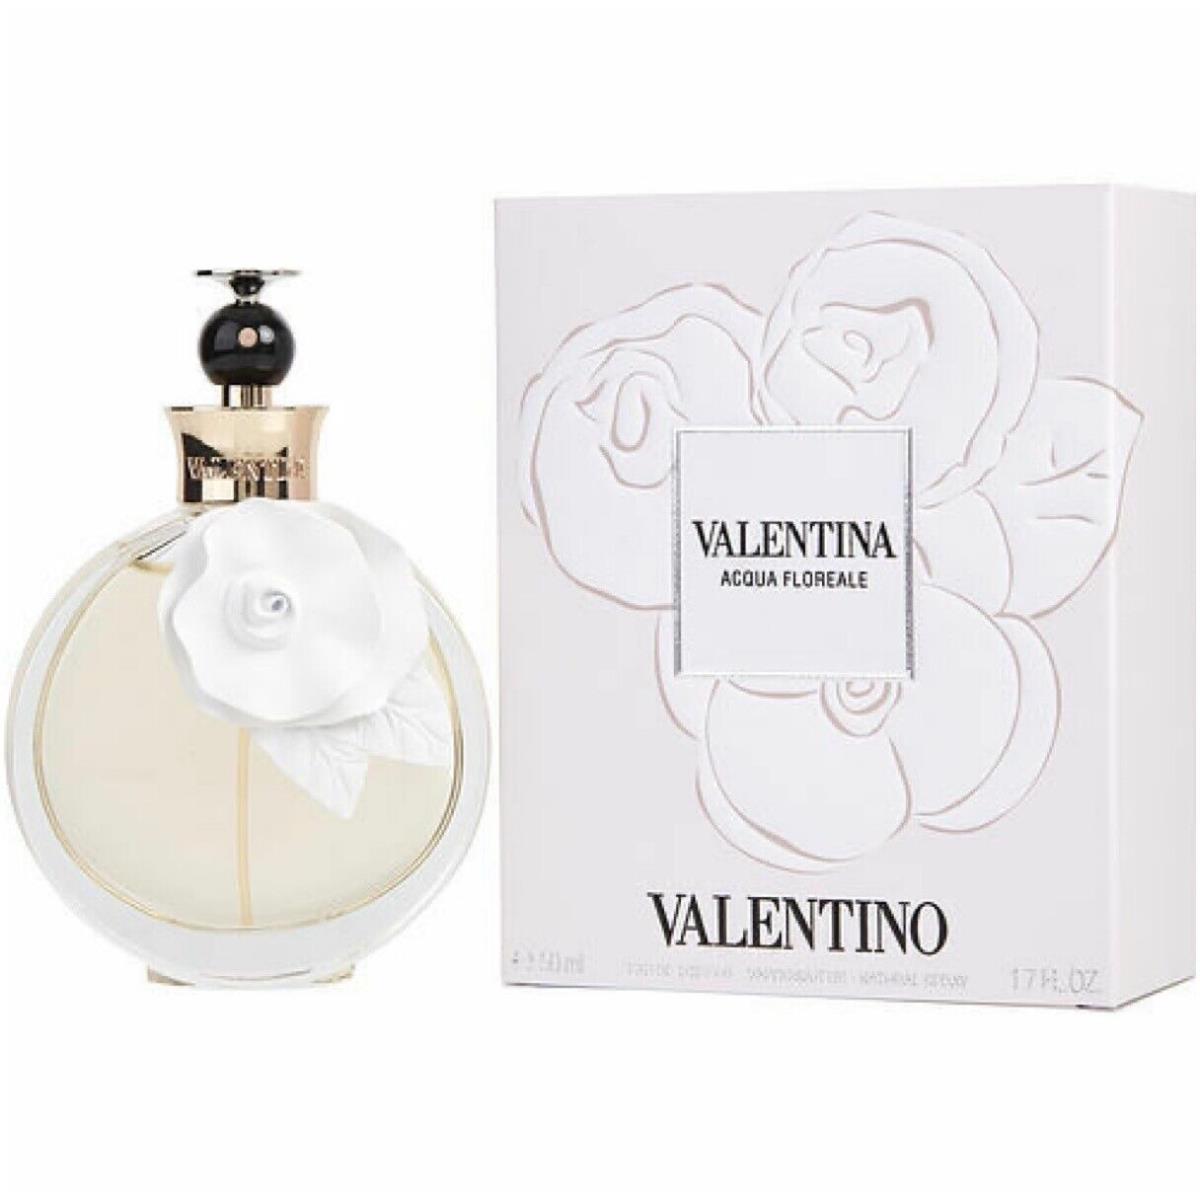 Valentina Acqua Floreale 1.7 Oz. 50ml Ea de Toilette Spray By Valentino